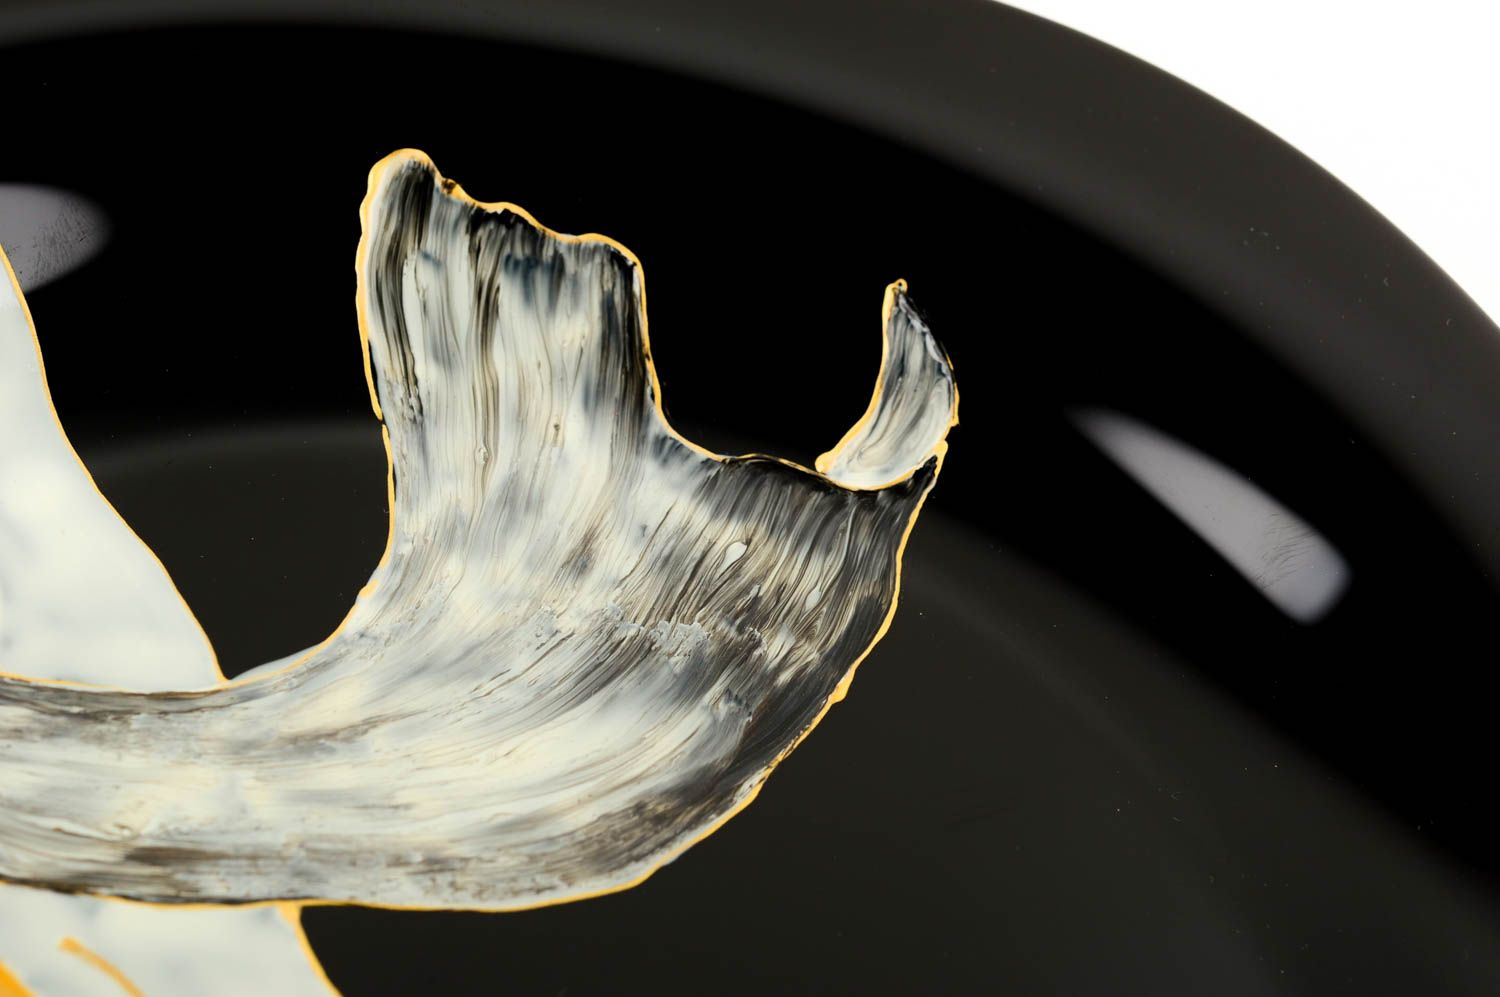 Plato de cristal hecho a mano con dibujo vajilla moderna utensilio de cocina foto 5